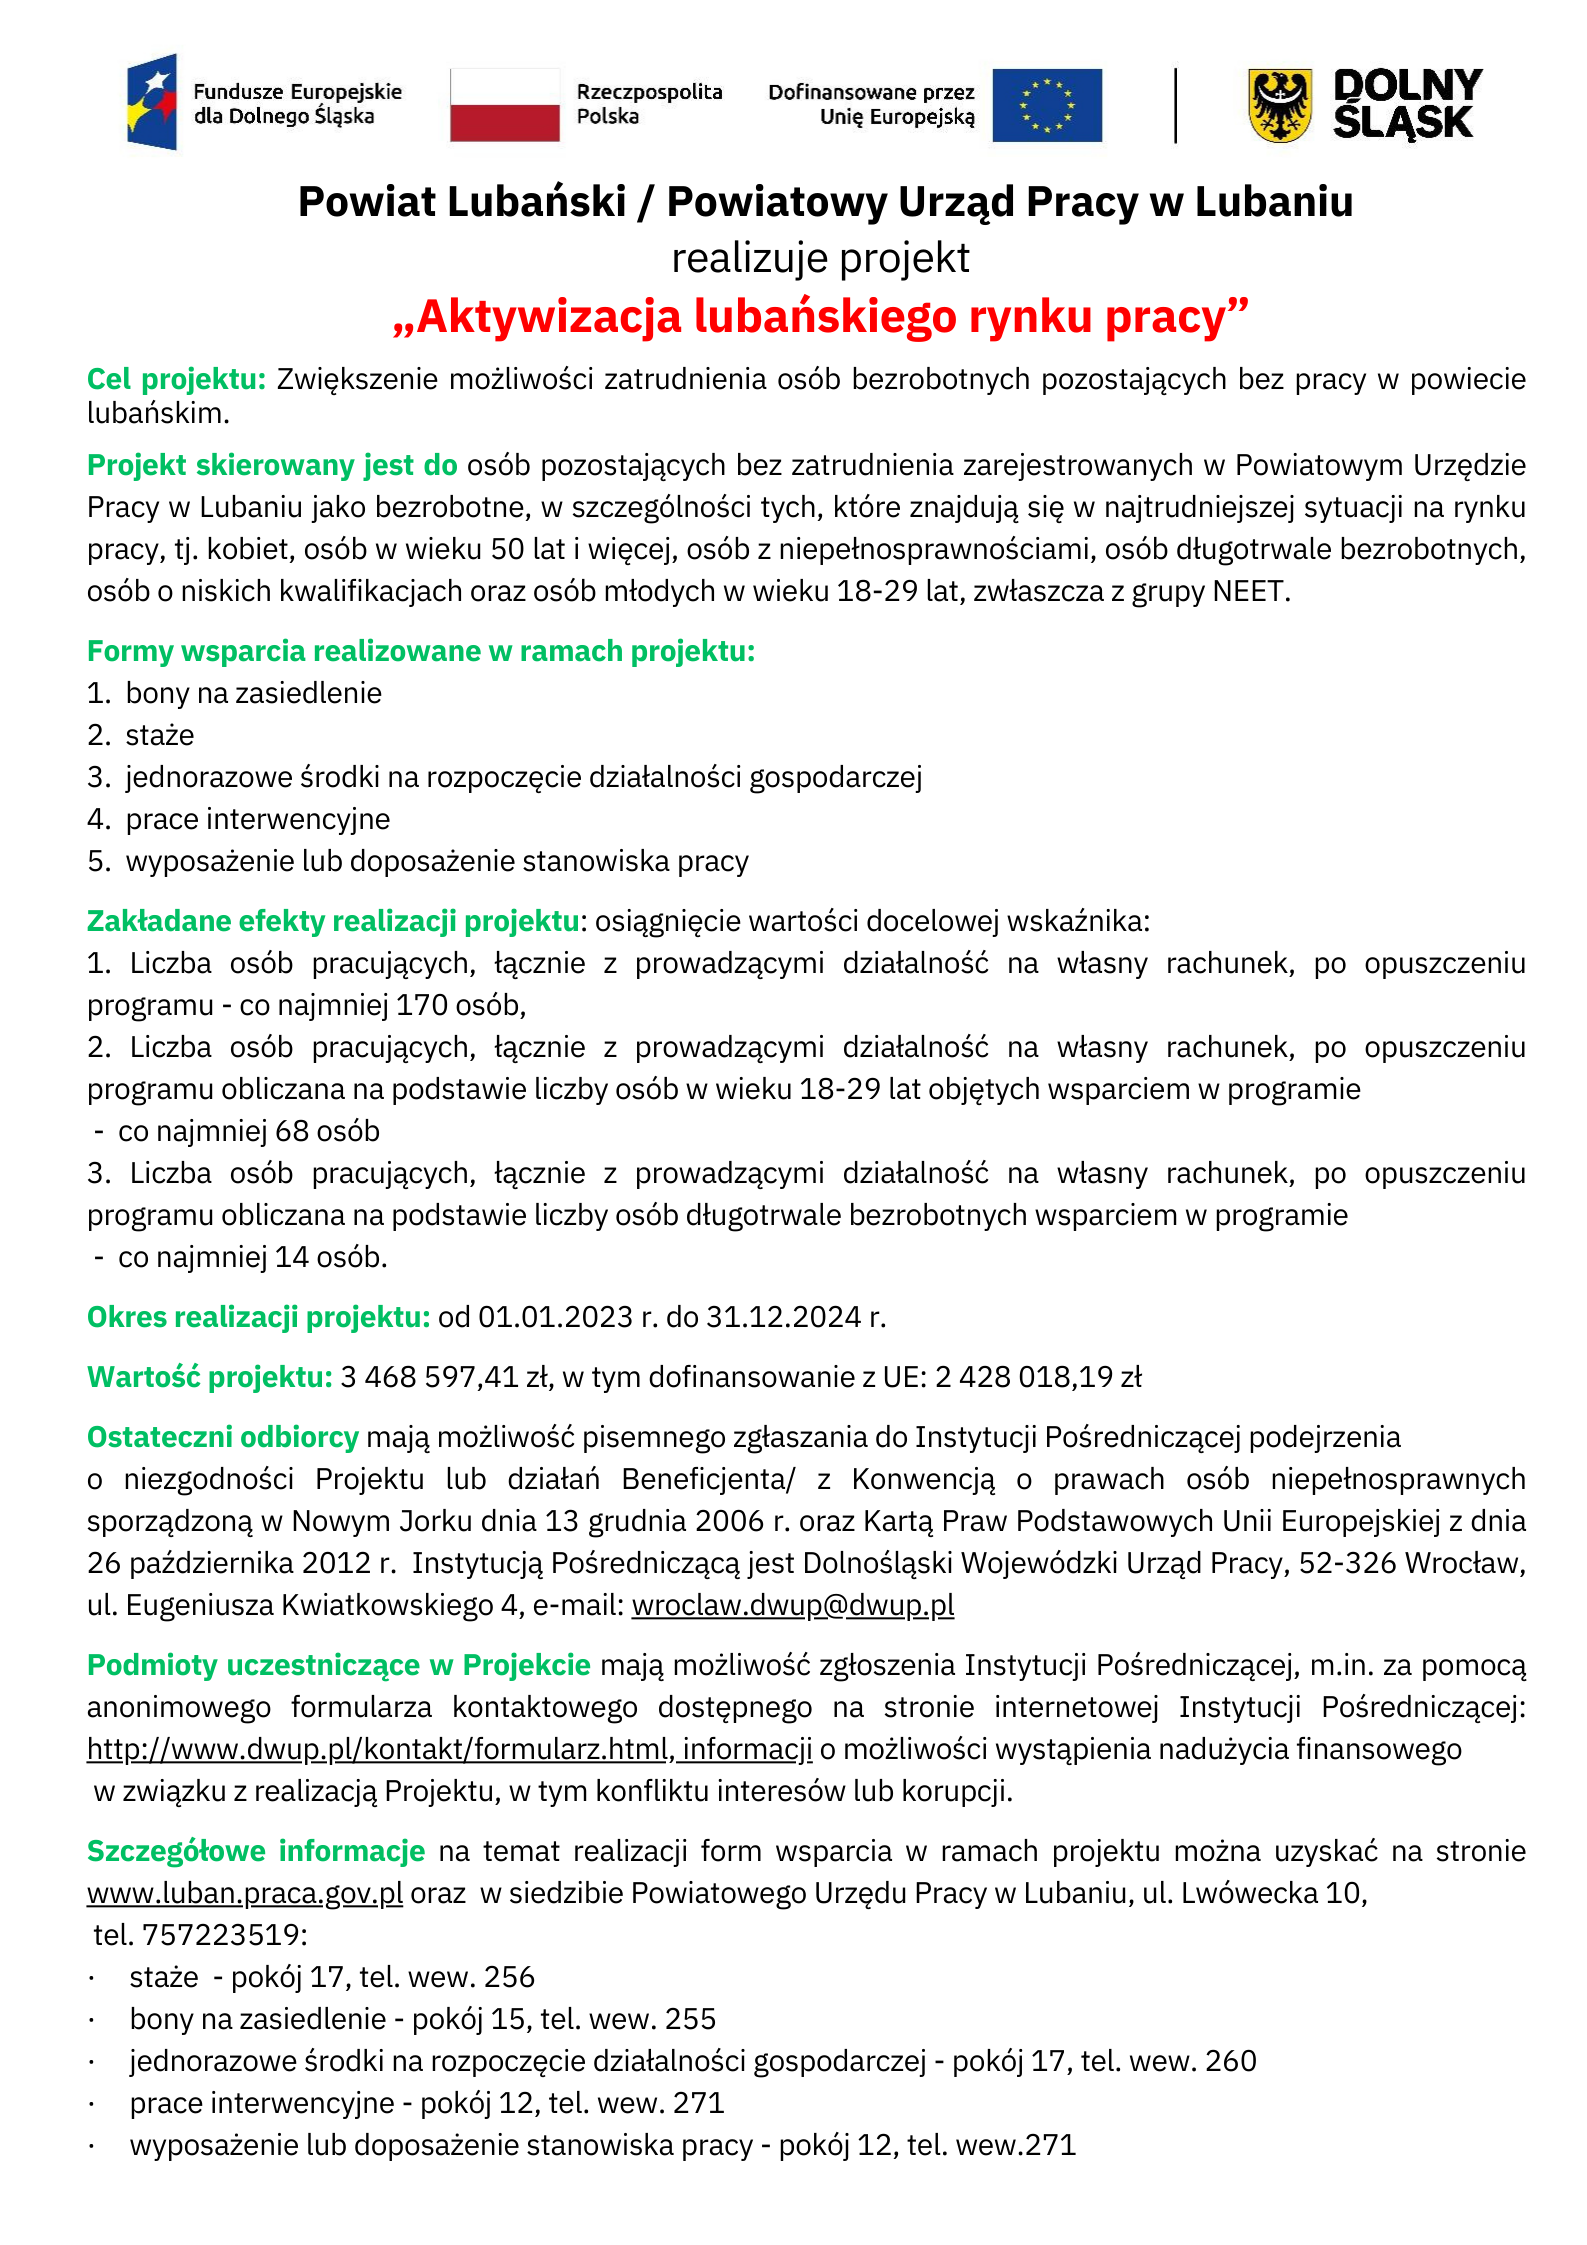 Obrazek dla: Informacja o realizowanym projekcie: Aktywizacja lubańskiego rynku pracy